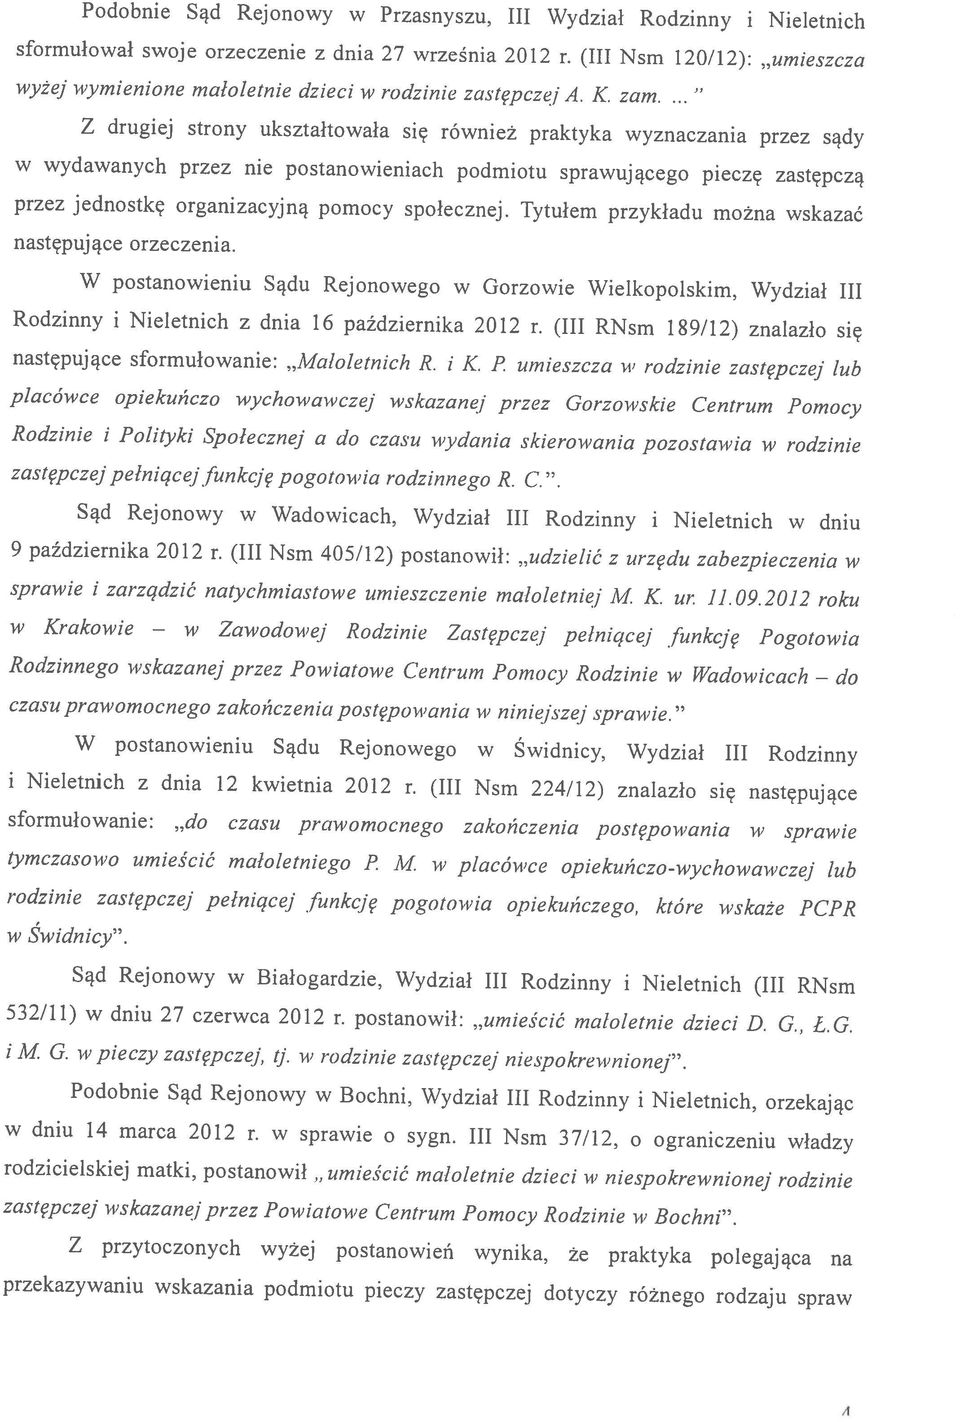 wymienione małoletnie dzieci w rodzinie zastępczej A. K. zam.... A w Krakowie sprawie i zarządzić natychmiastowe umieszczenie małoletniej M. K. ur. 11.09.